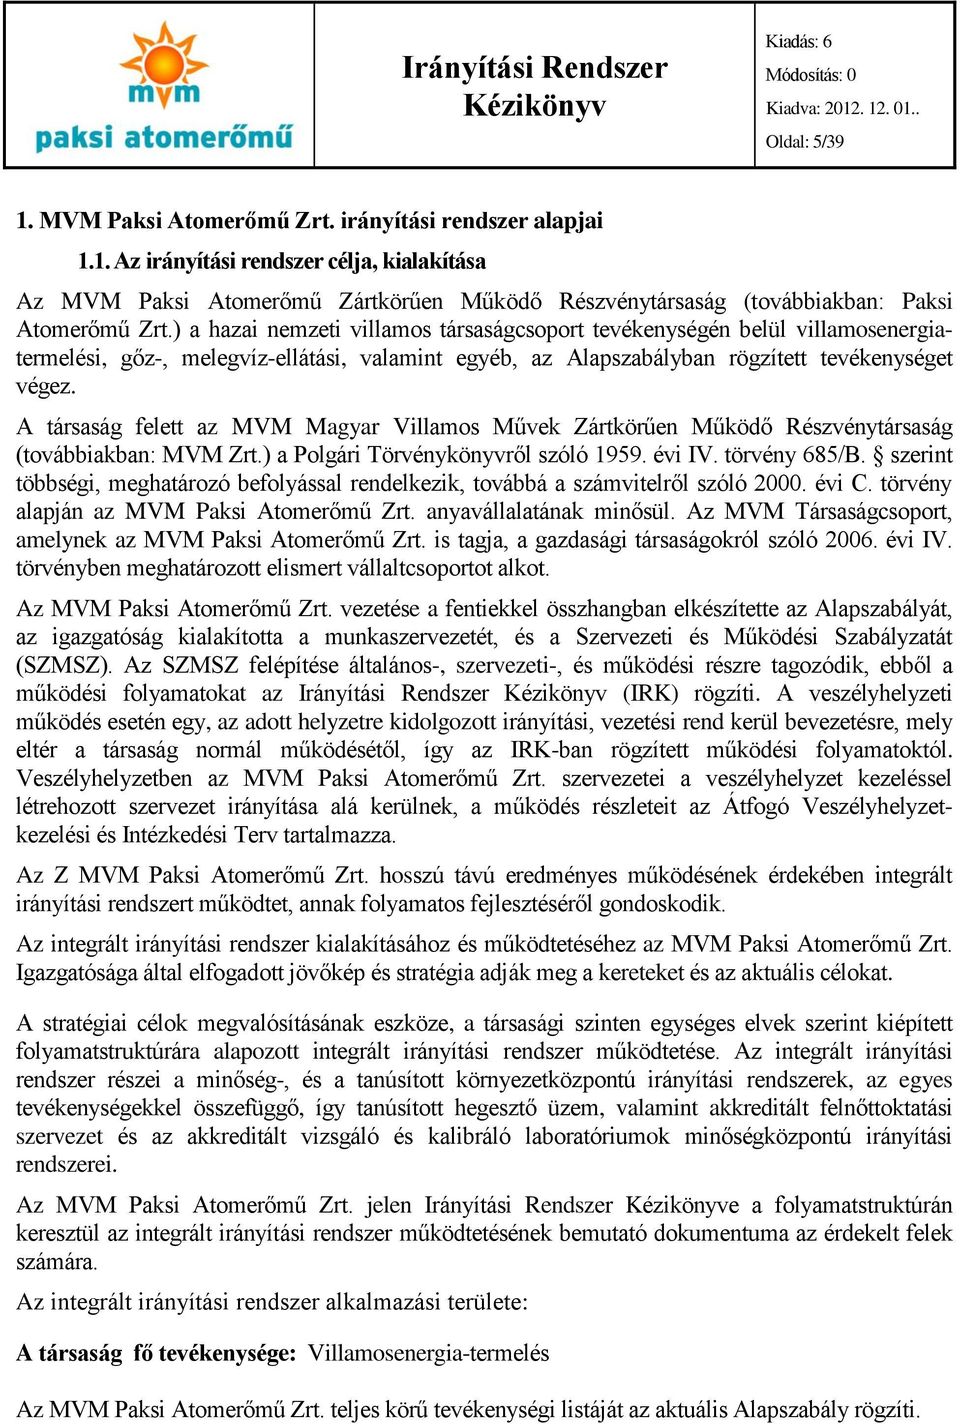 A társaság felett az MVM Magyar Villamos Művek Zártkörűen Működő Részvénytársaság (továbbiakban: MVM Zrt.) a Polgári Törvénykönyvről szóló 1959. évi IV. törvény 685/B.